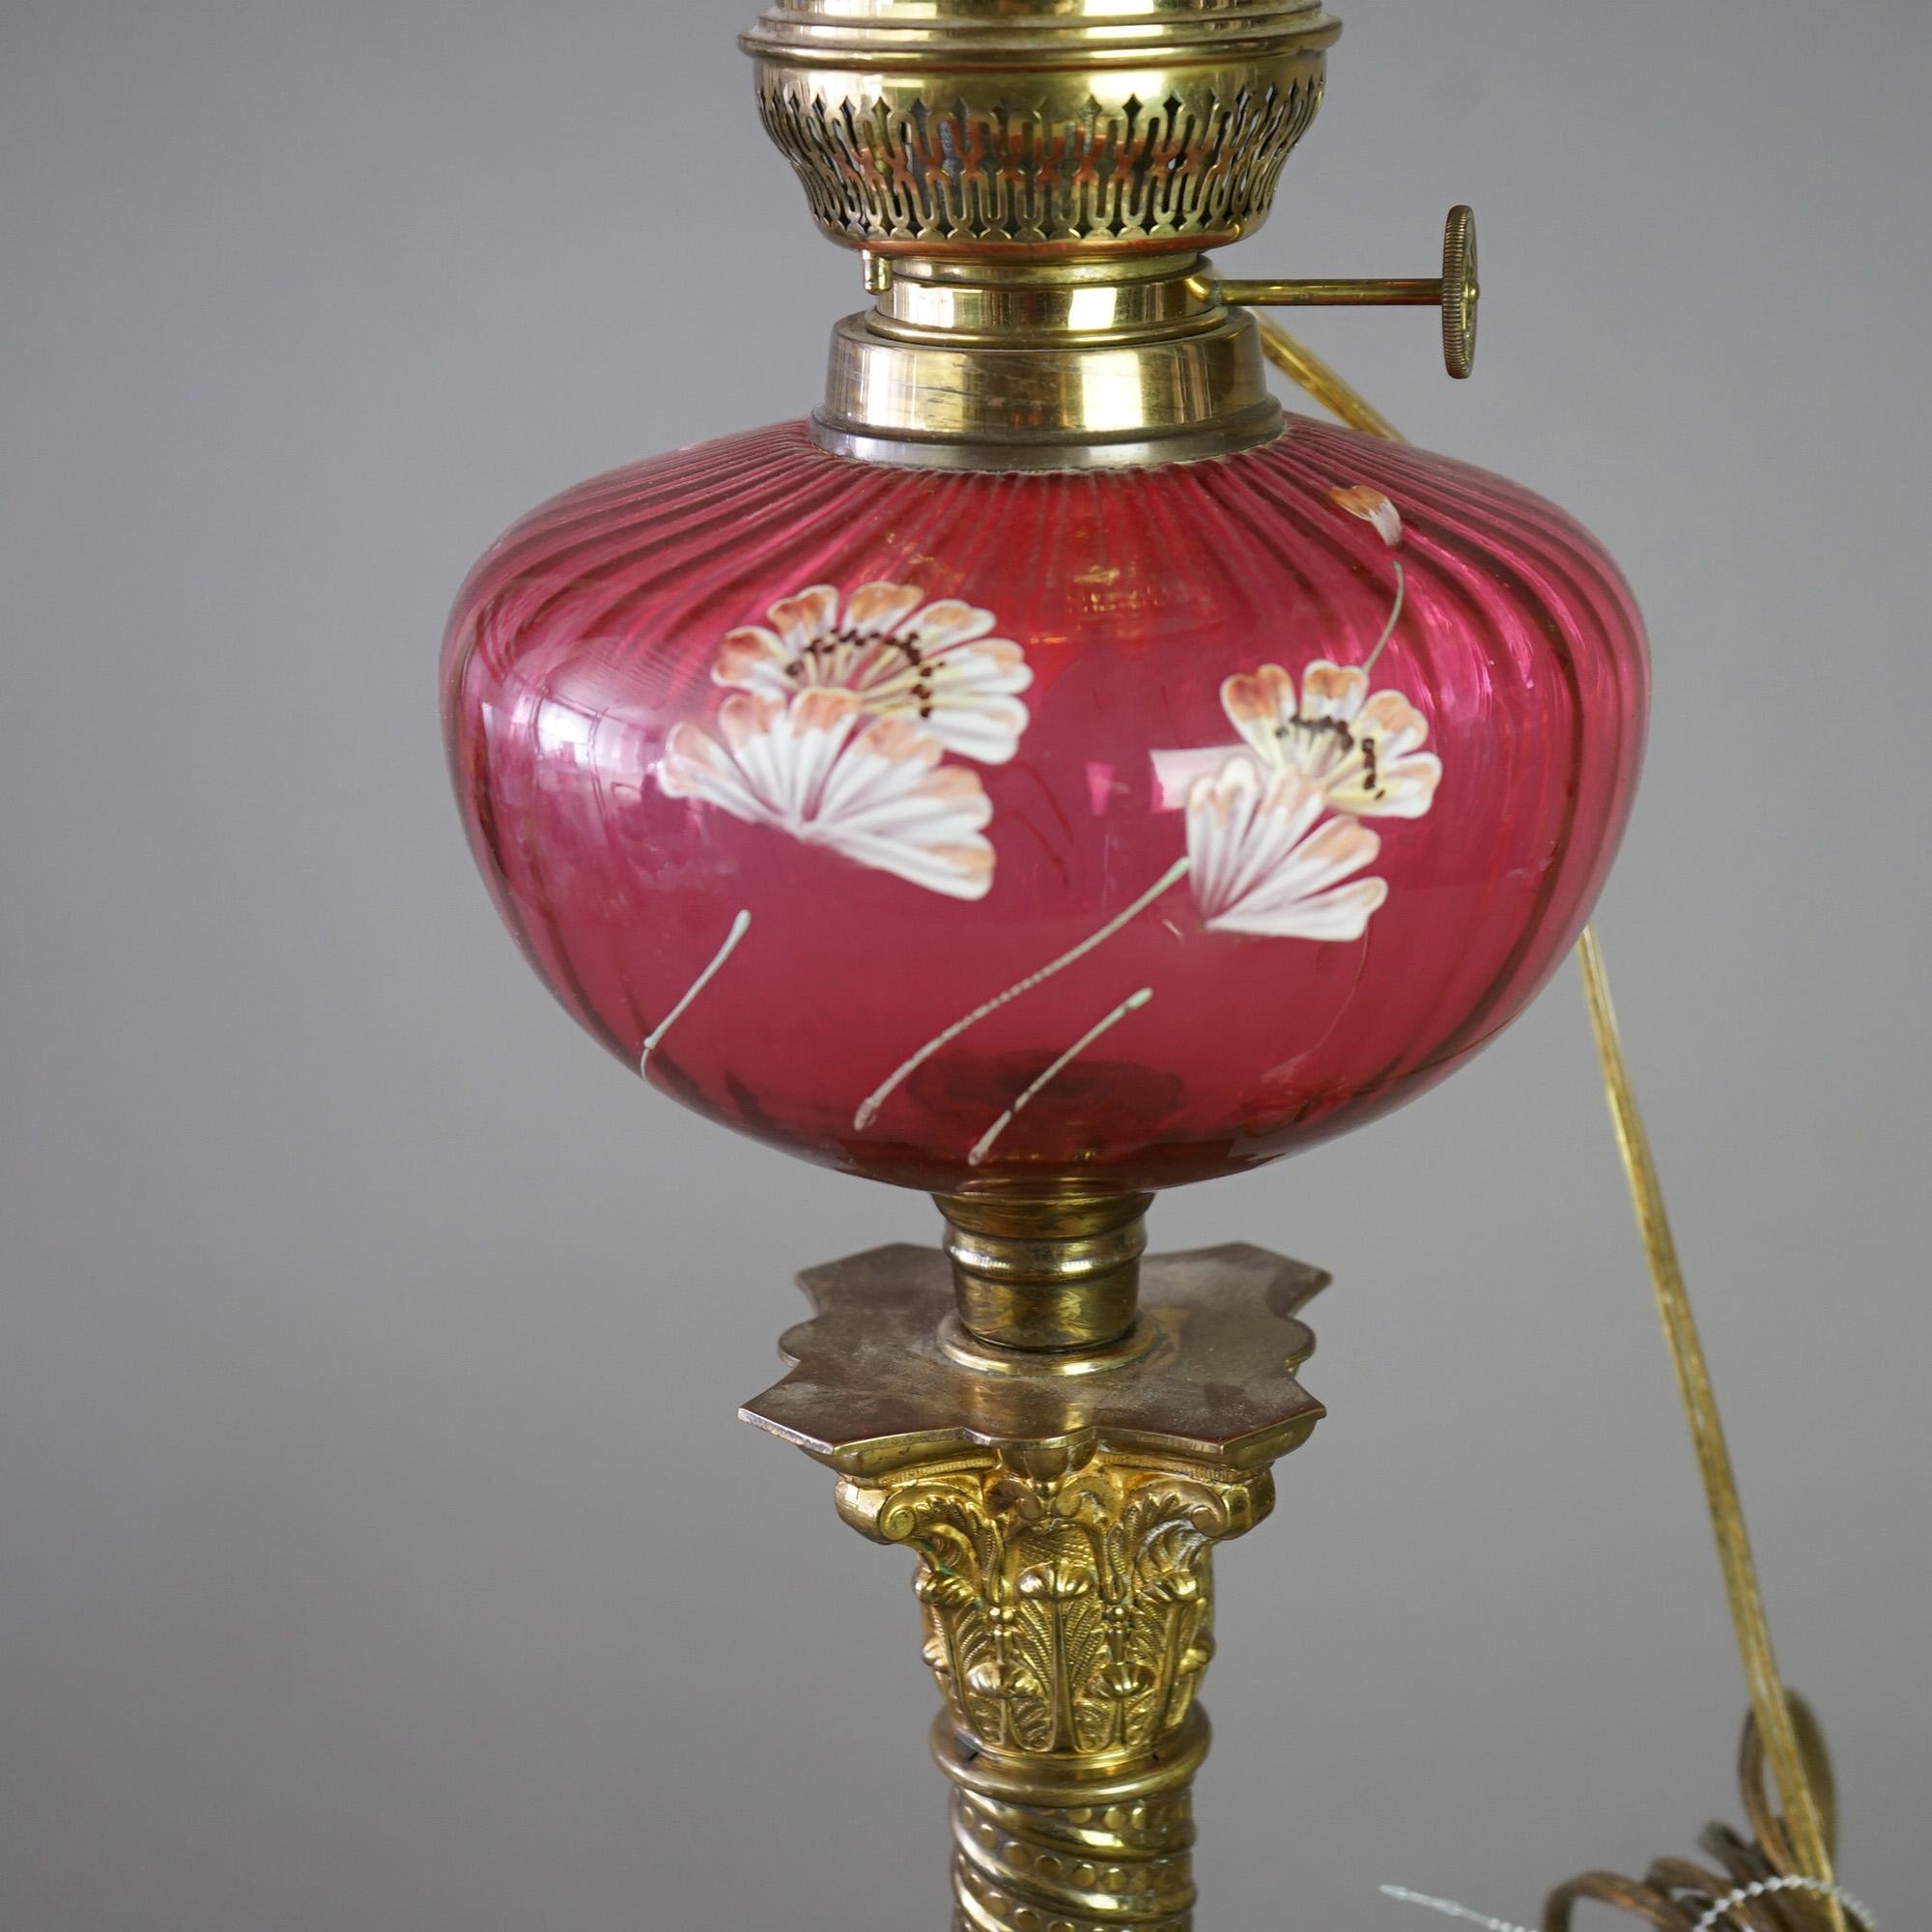 Lampe de banquet victorienne antique avec abat-jour en verre canneberge à bord volant sur une base ayant une fonte en verre assortie avec des fleurs peintes à la main, montée sur une colonne de forme corinthienne en laiton, électrifiée,